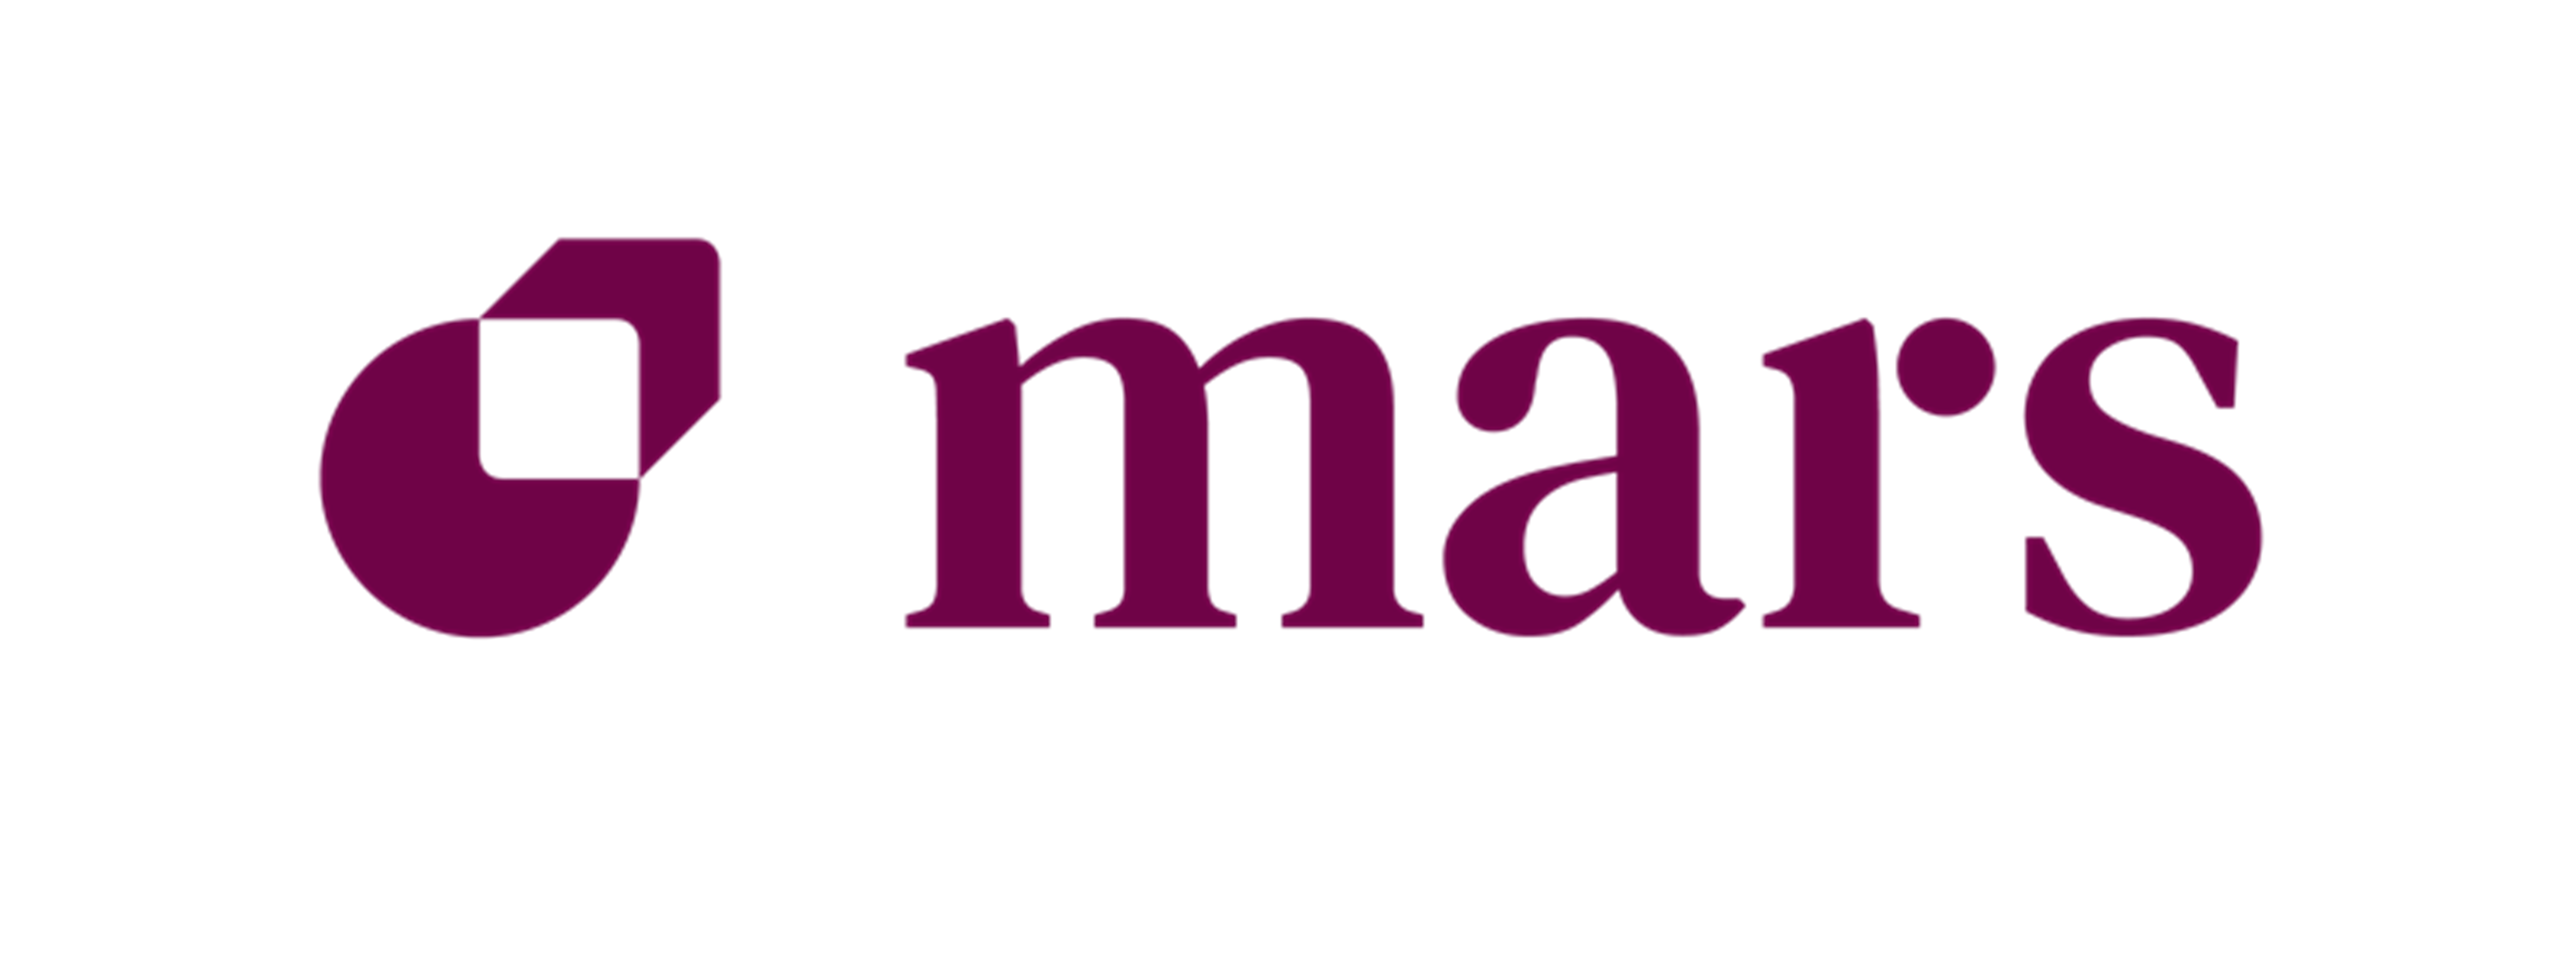 Mars_logo.png